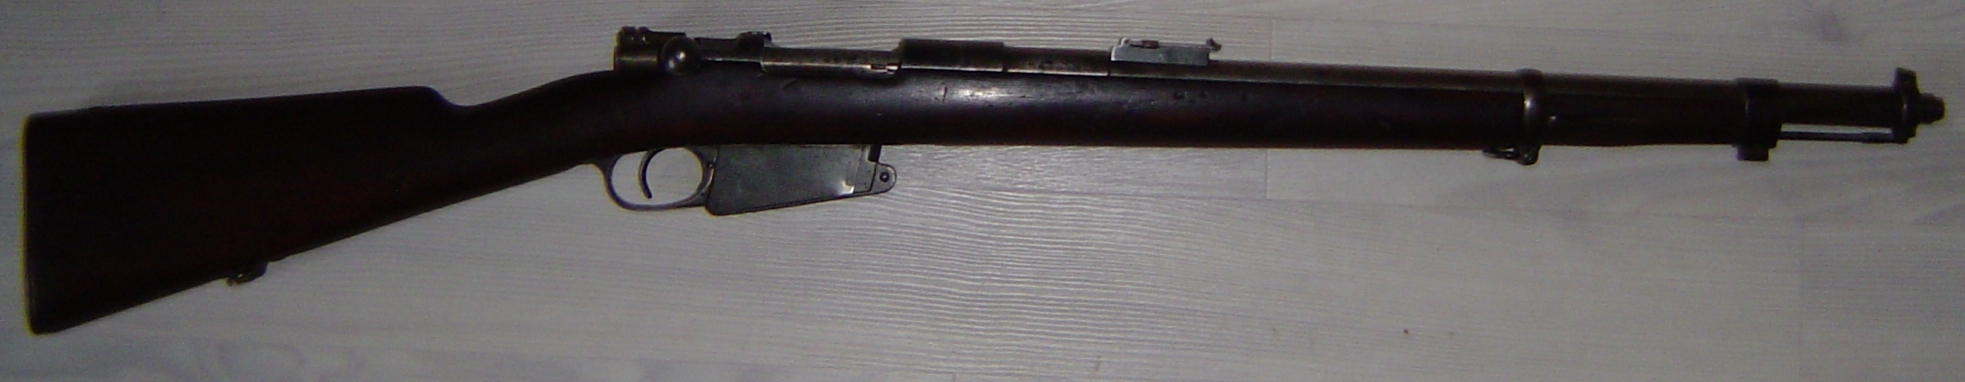 Carabine modèle 1889 avec baïonnette